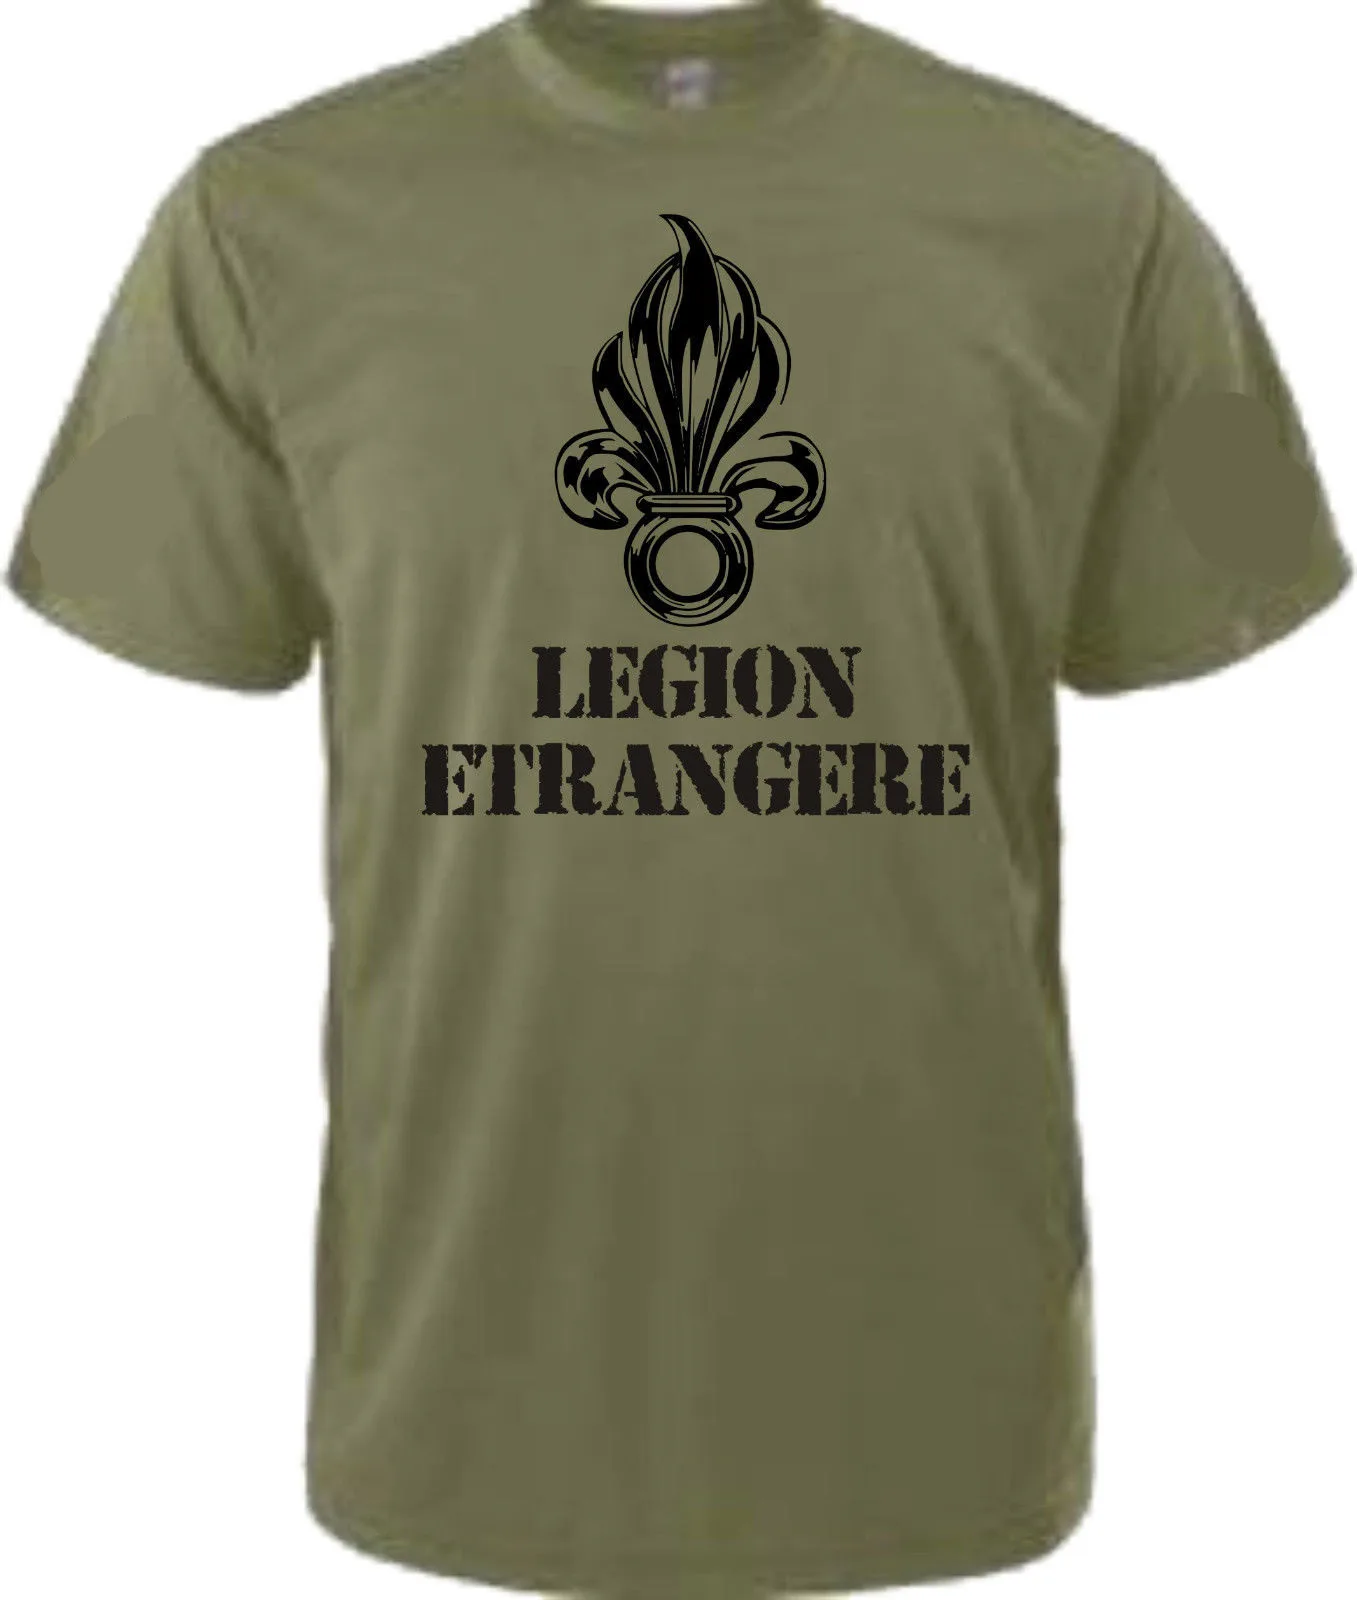 

Модная хлопковая футболка для младенцев, футболка с надписью легиона, иностранной армии, Франции, войн легиона, солдат, пехоты, классные фут...